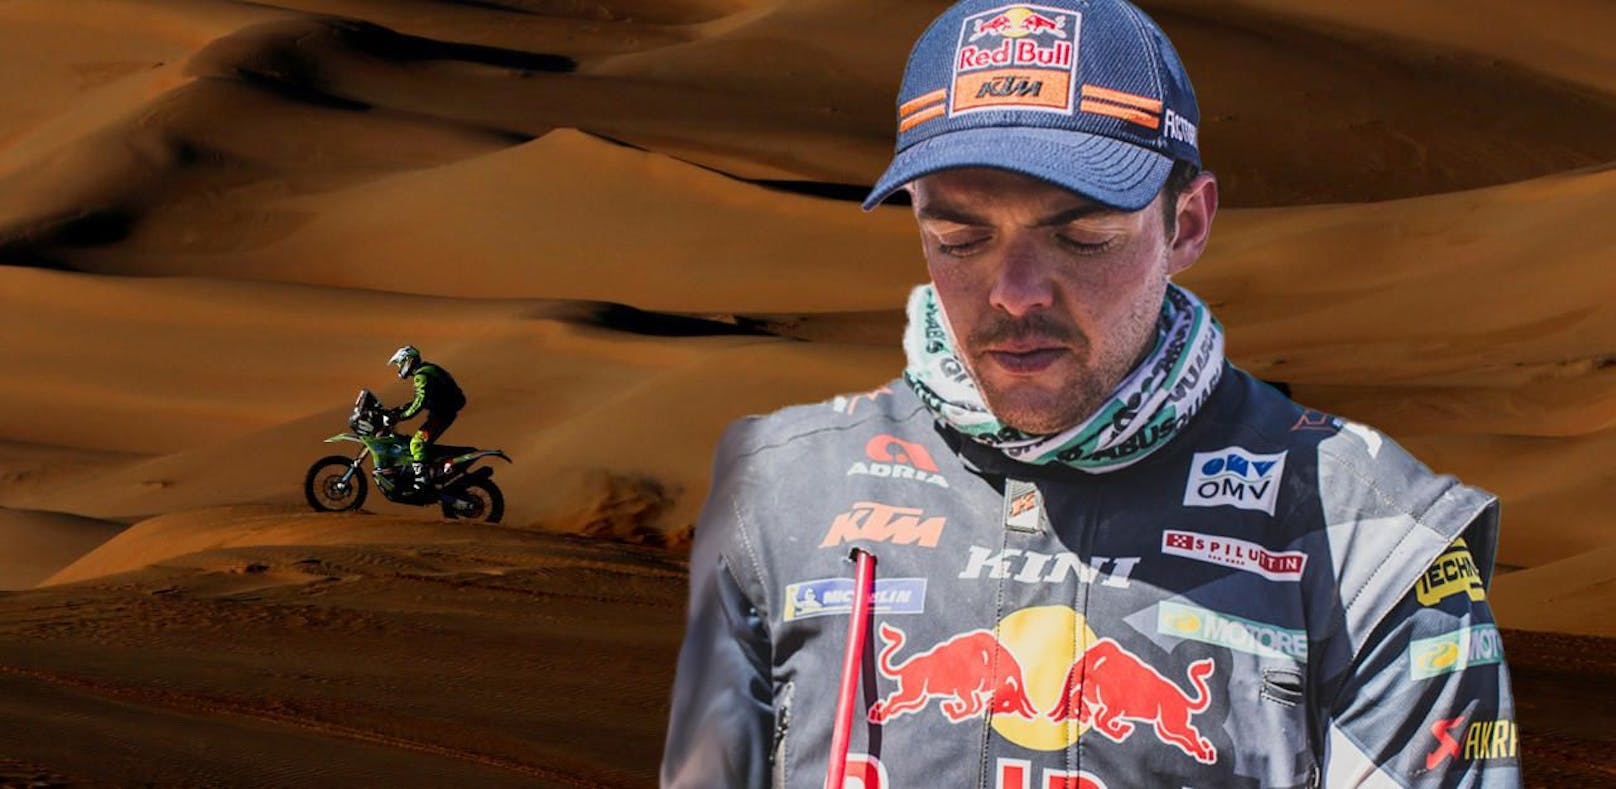 Matthias Walkner bei der Rallye Dakar. Im Hintergrund ist Edwin Straver zu sehen. Der Niederländer war nach einem Sturz zehn Minuten ohne Herzschlag und ist in kritischem Zustand.